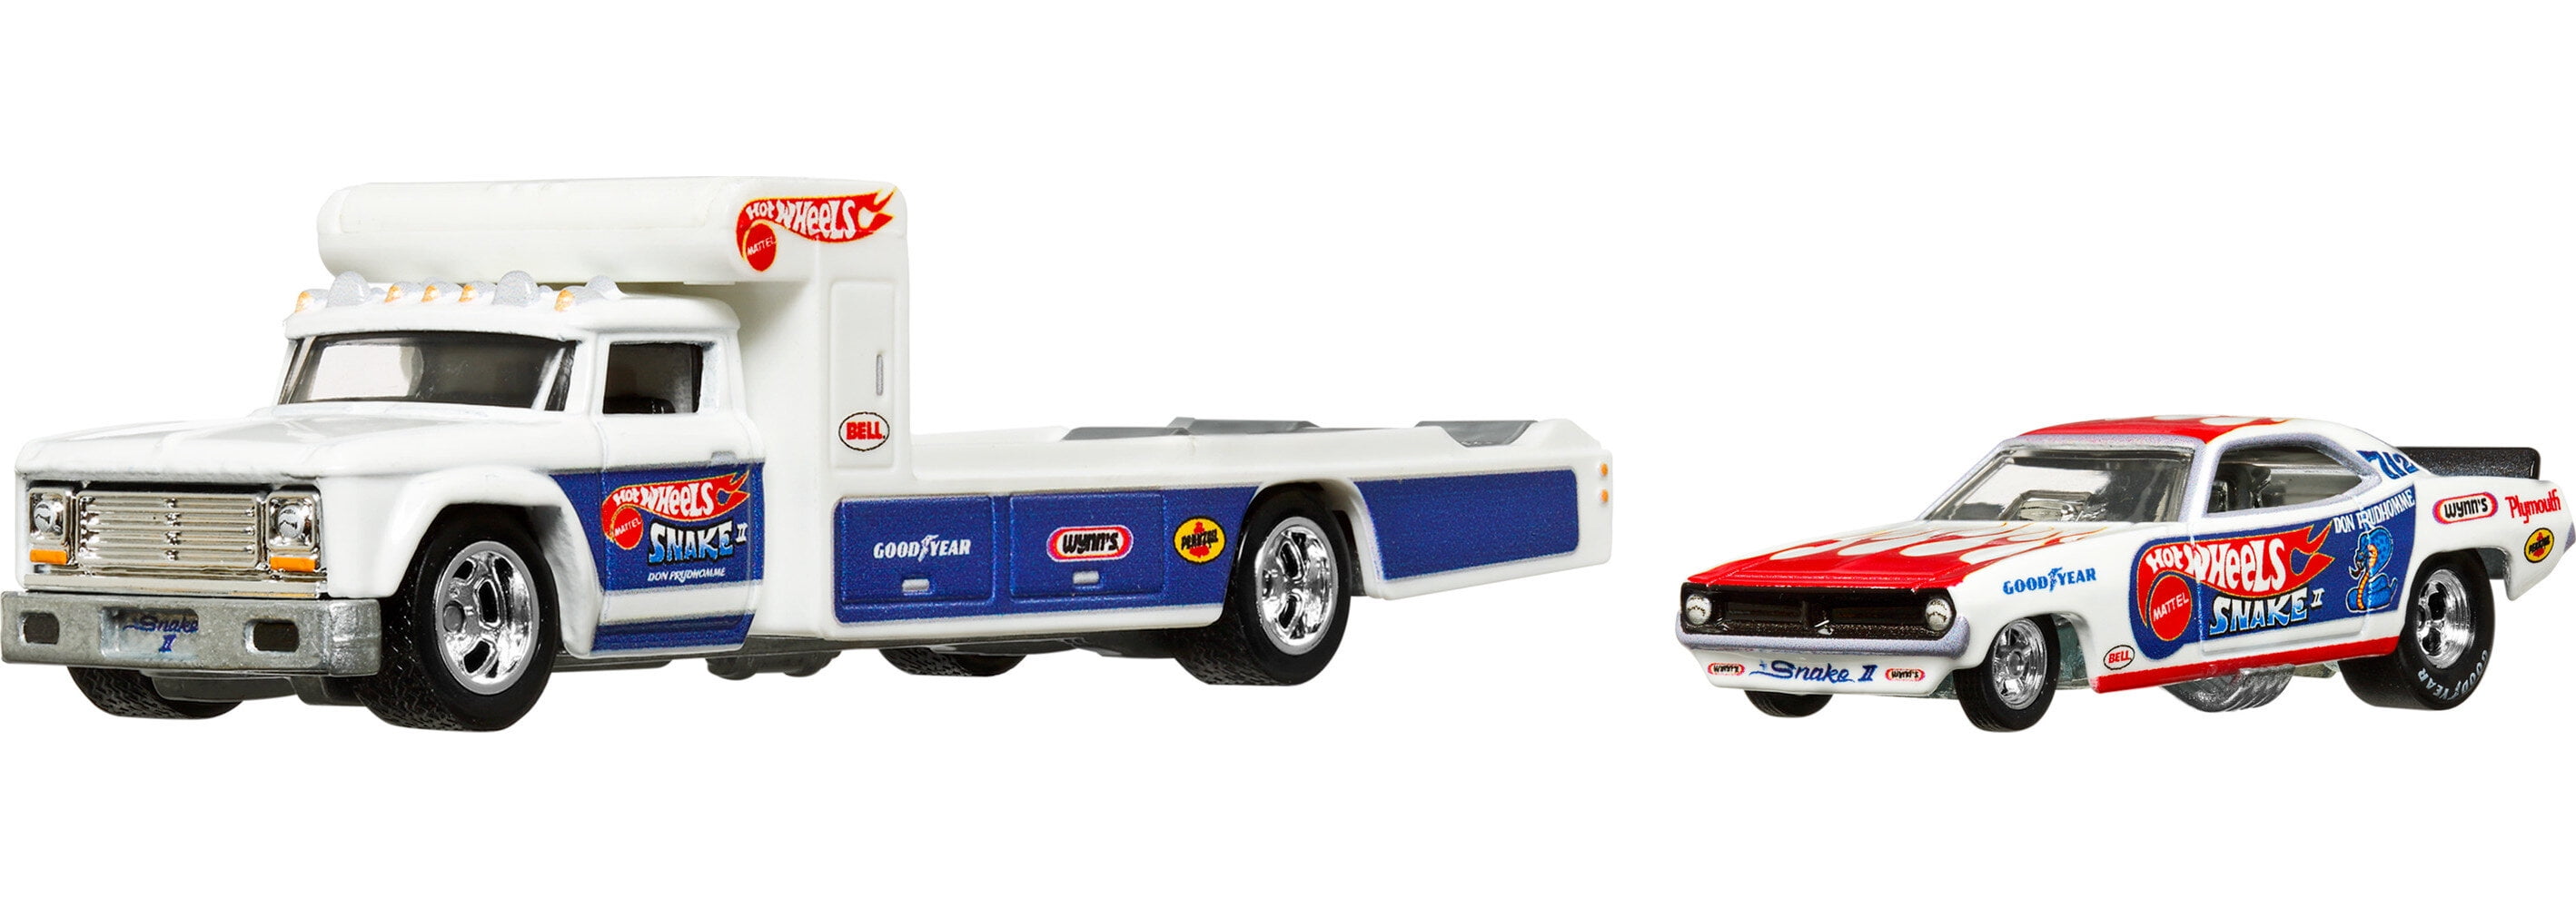 Hot Wheels - Mega truck, truck transport car — Juguetesland